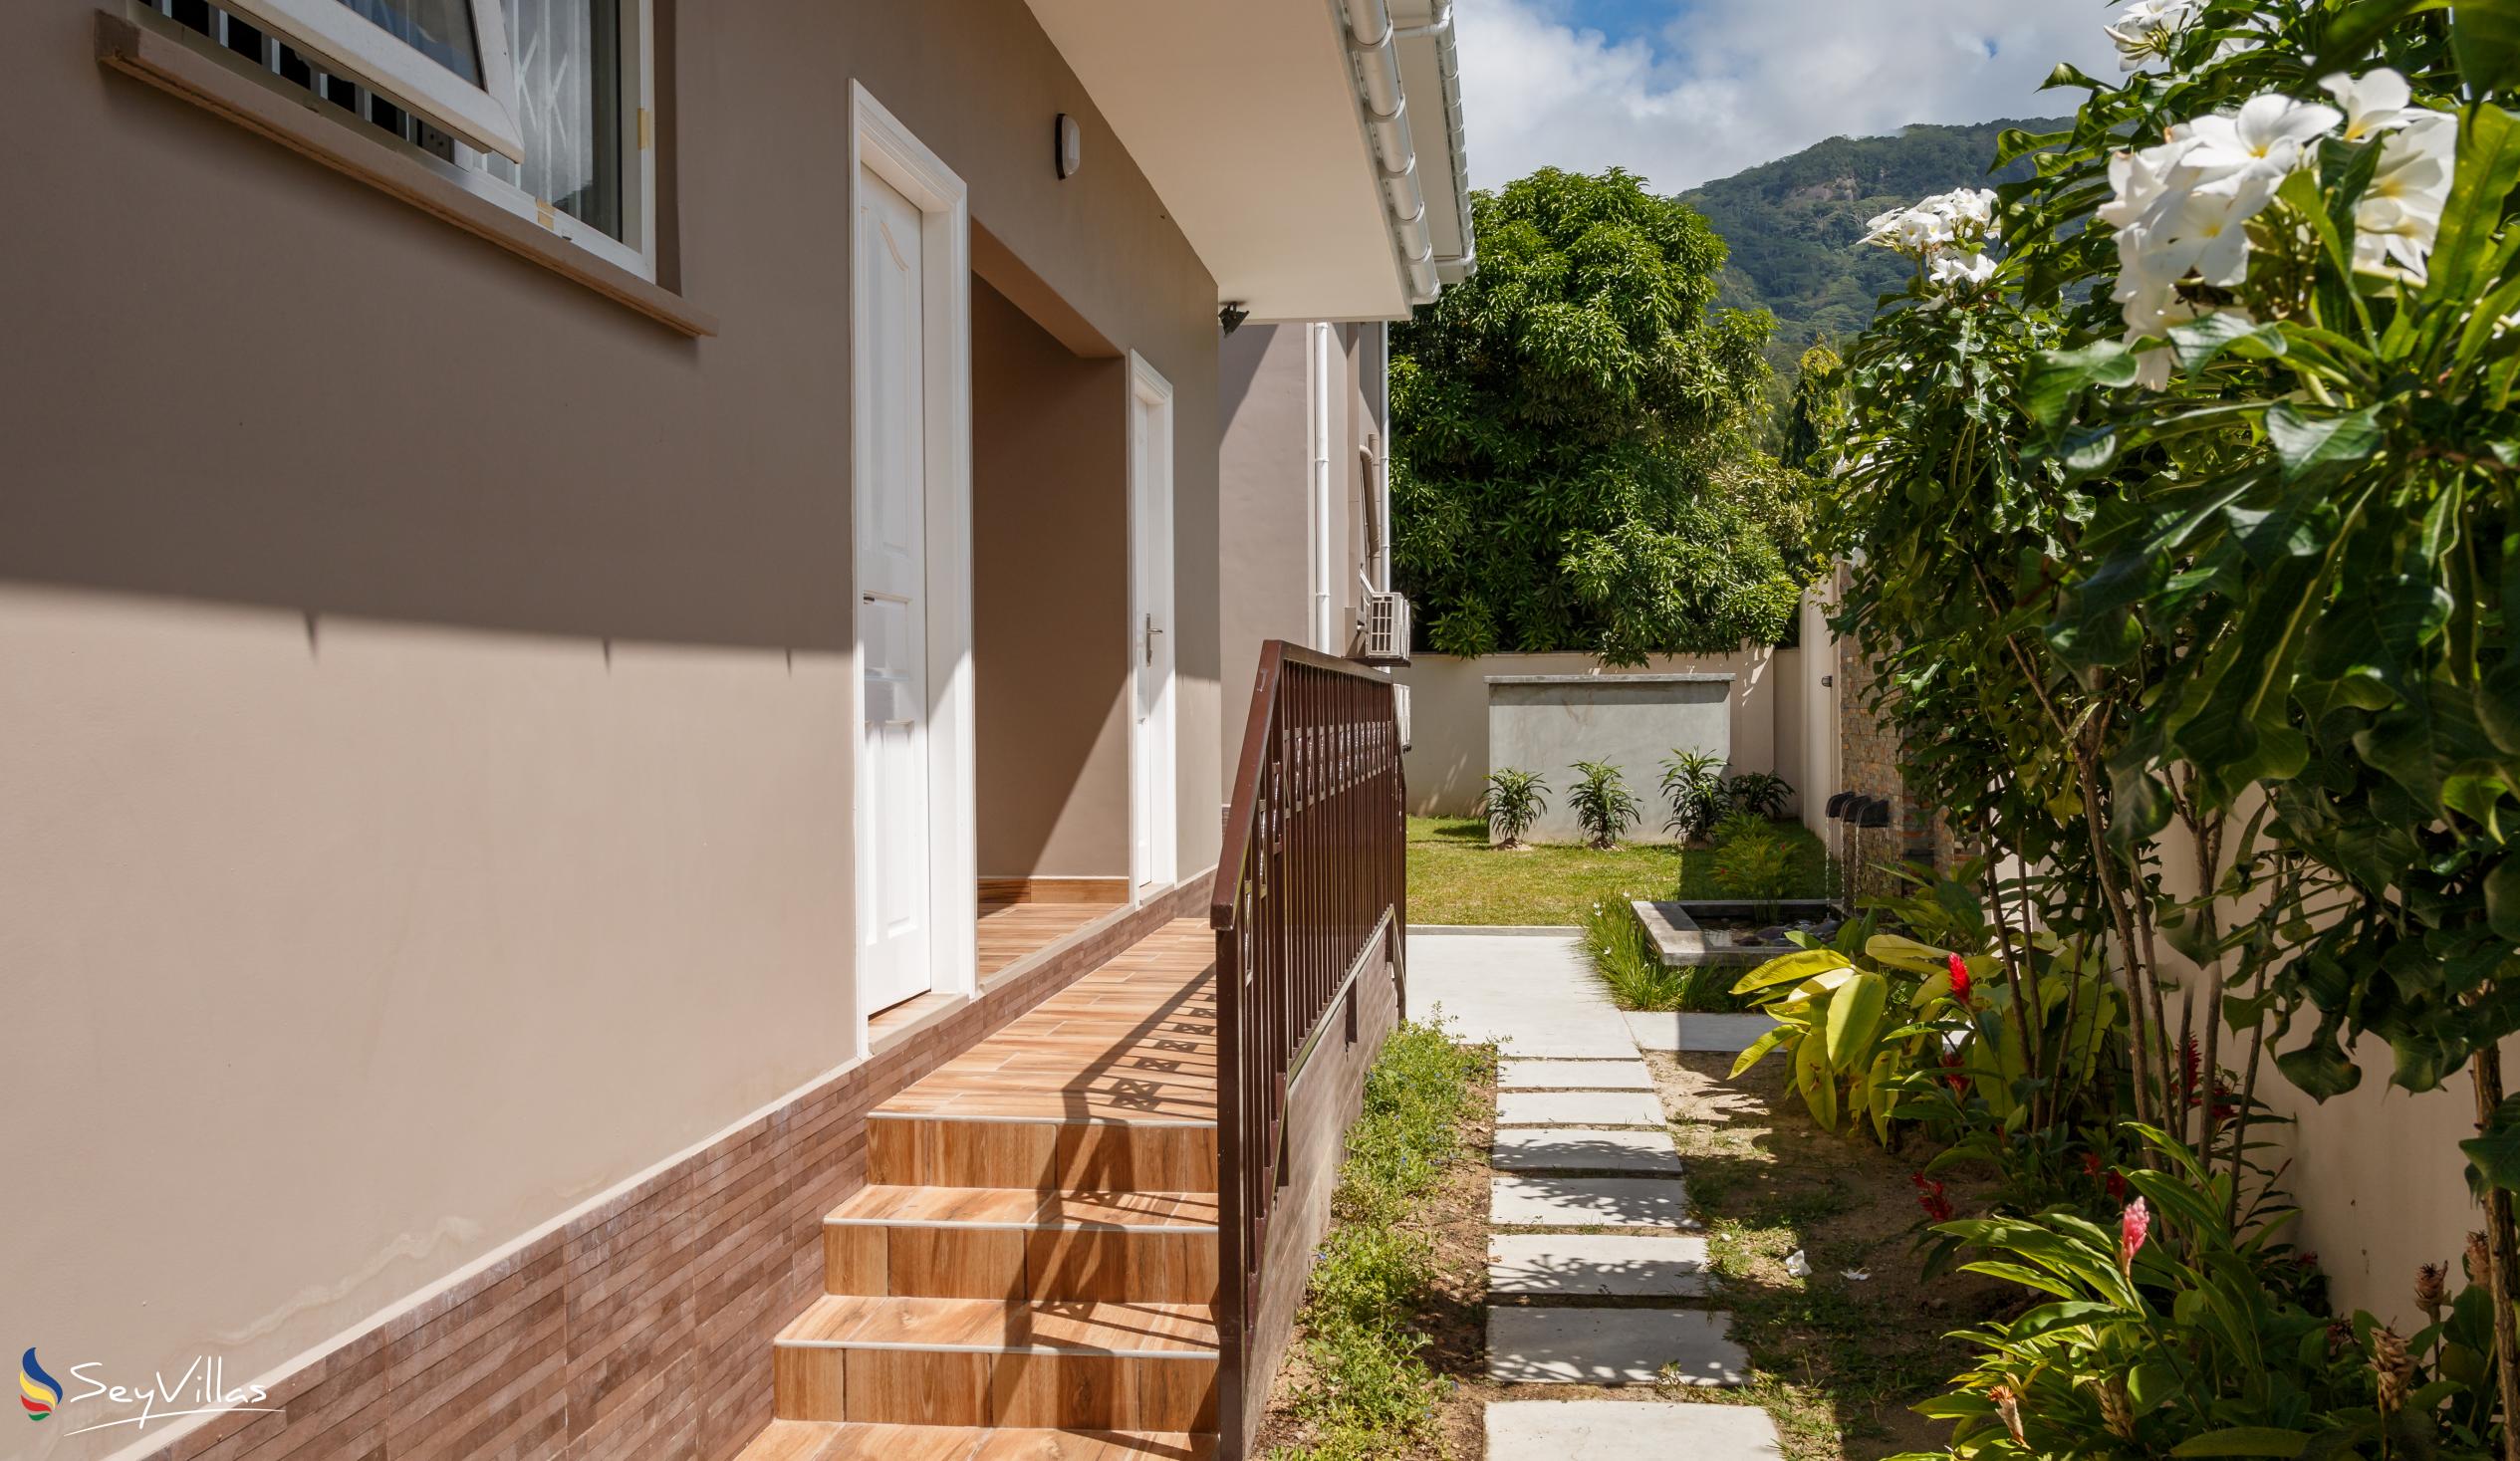 Foto 10: Residence Argine - Extérieur - Mahé (Seychelles)